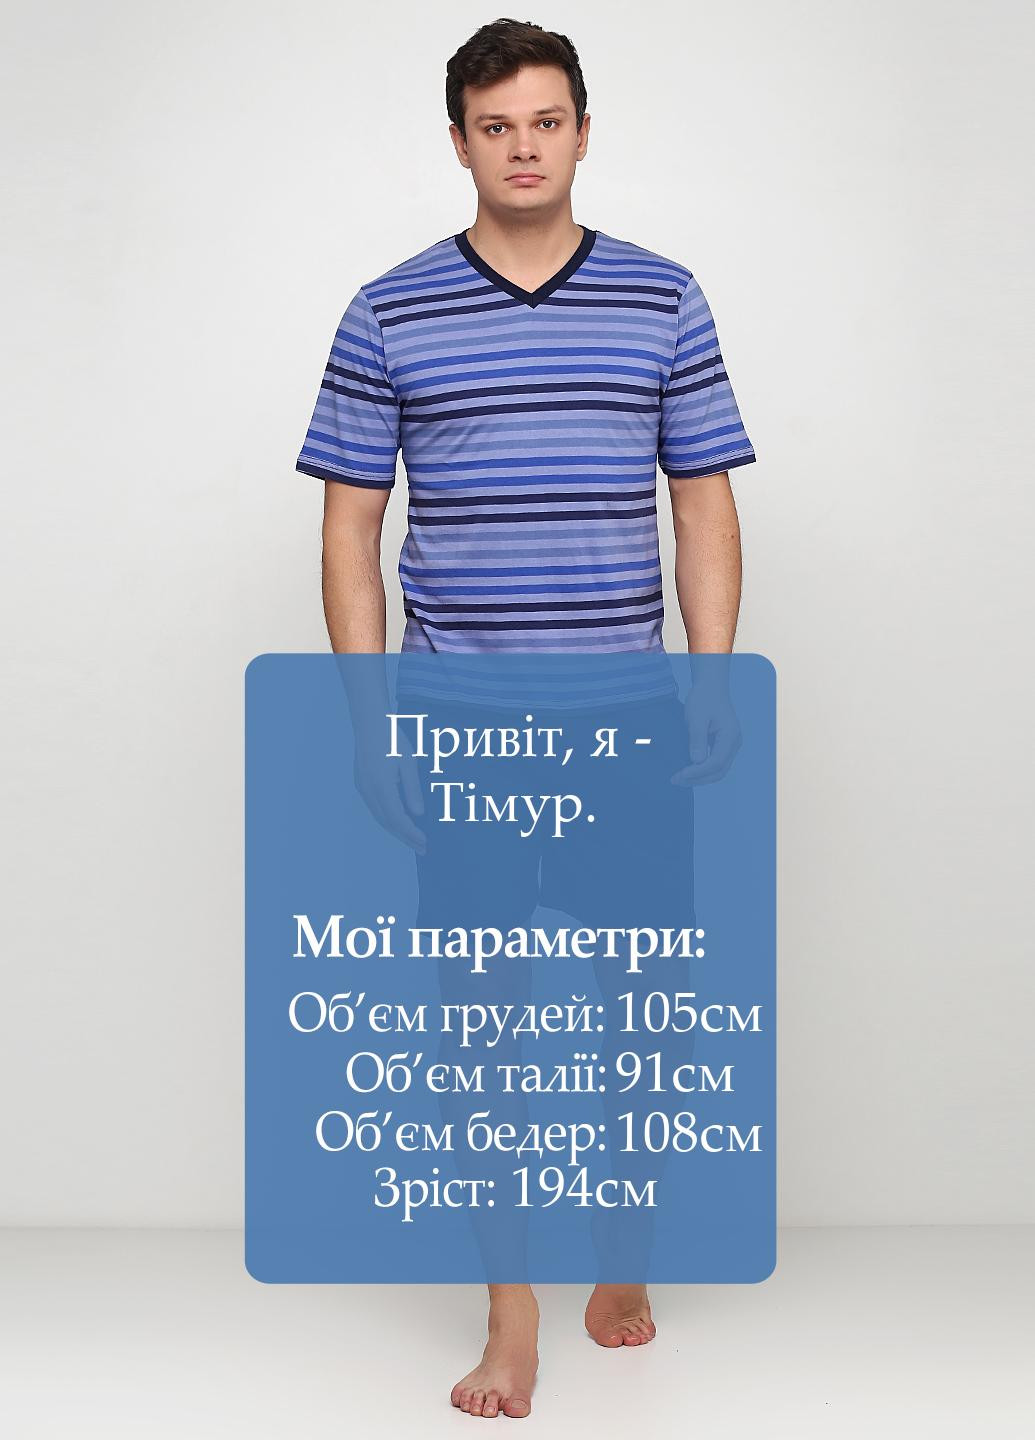 Пижама (футболка, шорты) S.Oliver футболка + шорты полоска тёмно-синяя домашняя хлопок